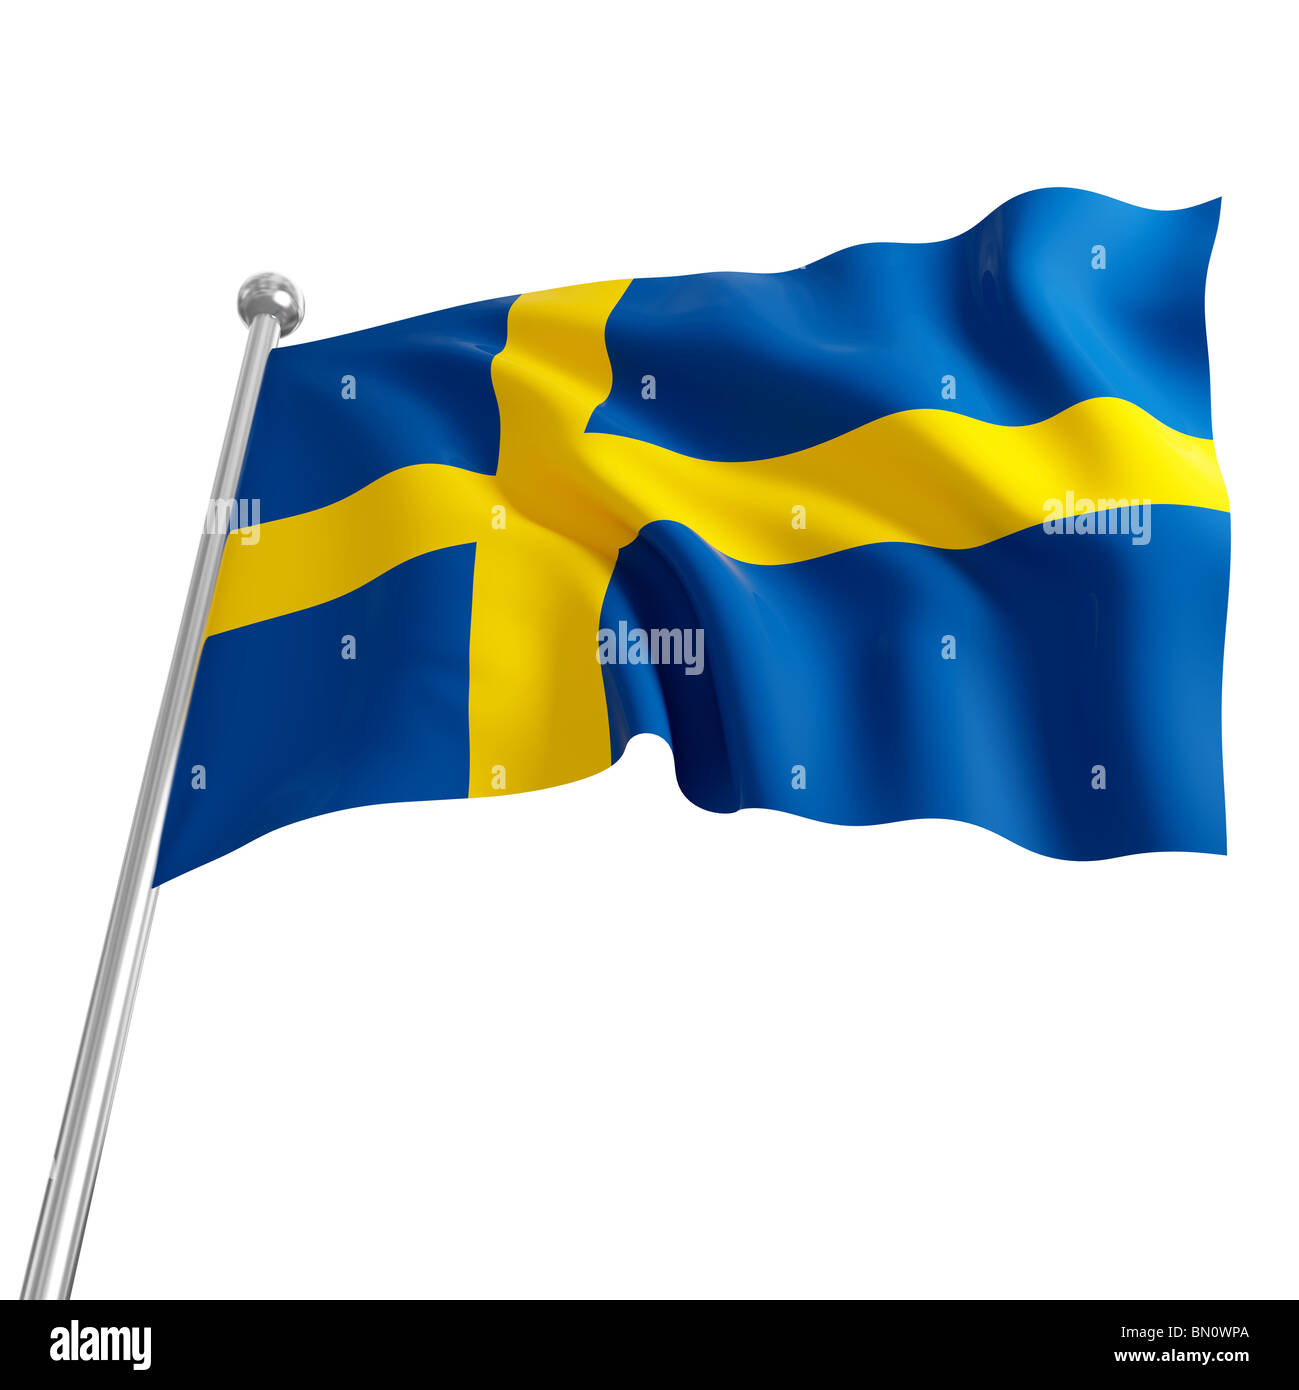 3d model of sweden flag on white background Stock Photo